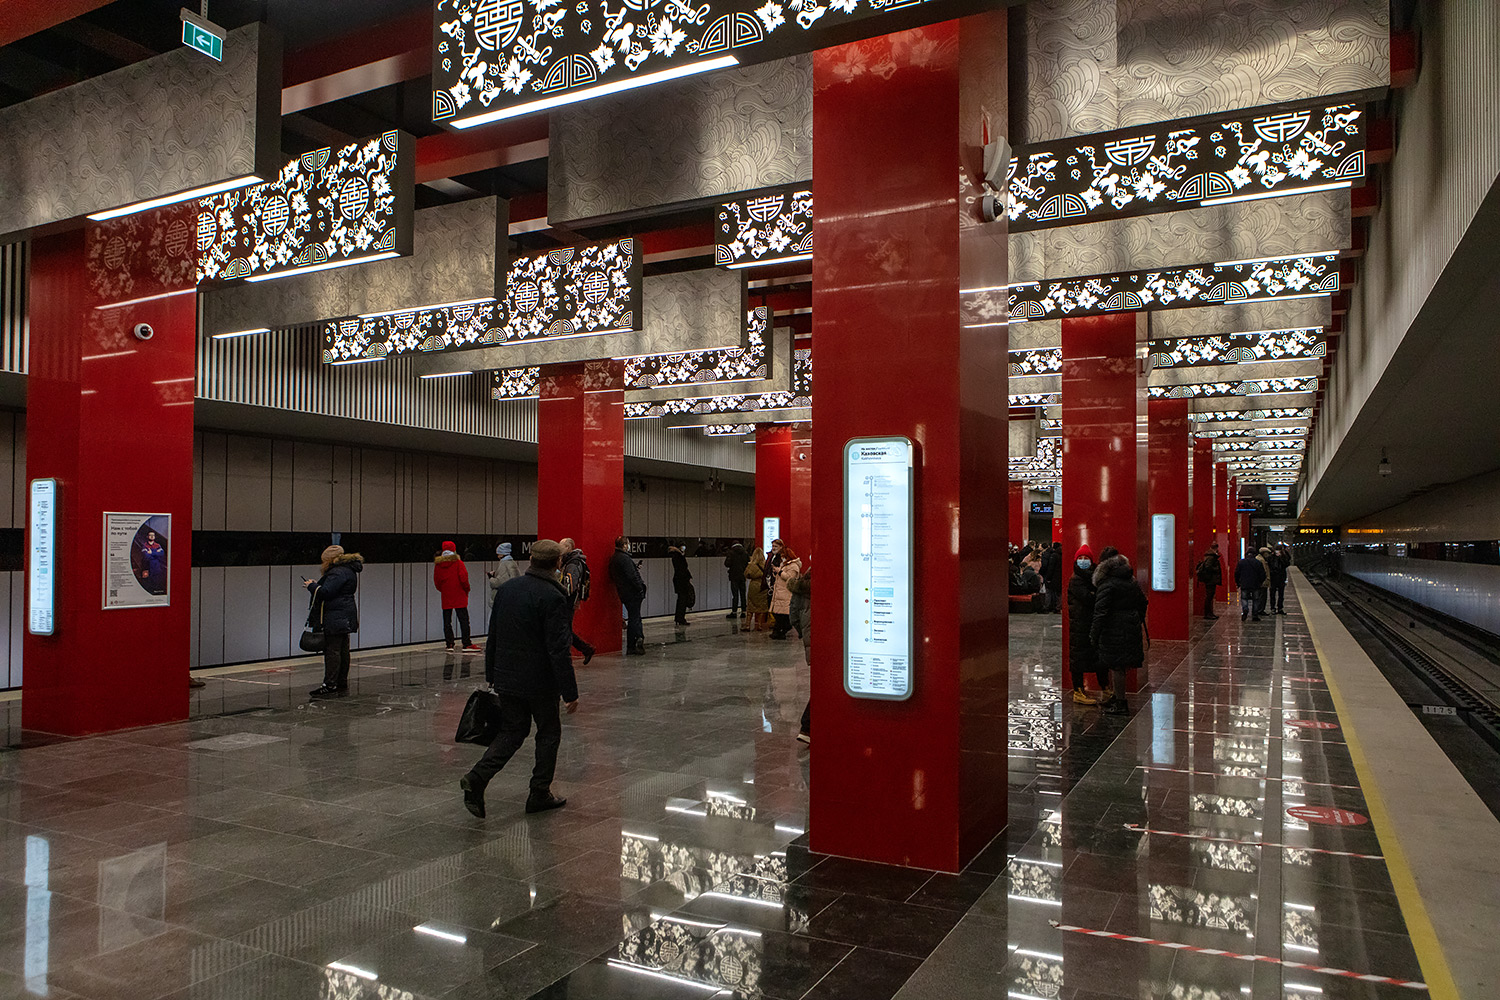 Москва — Метрополитен — [11] Большая Кольцевая линия; Москва — Открытие новых станций БКЛ на участке «Мнёвники» — «Каховская» 7 декабря 2021